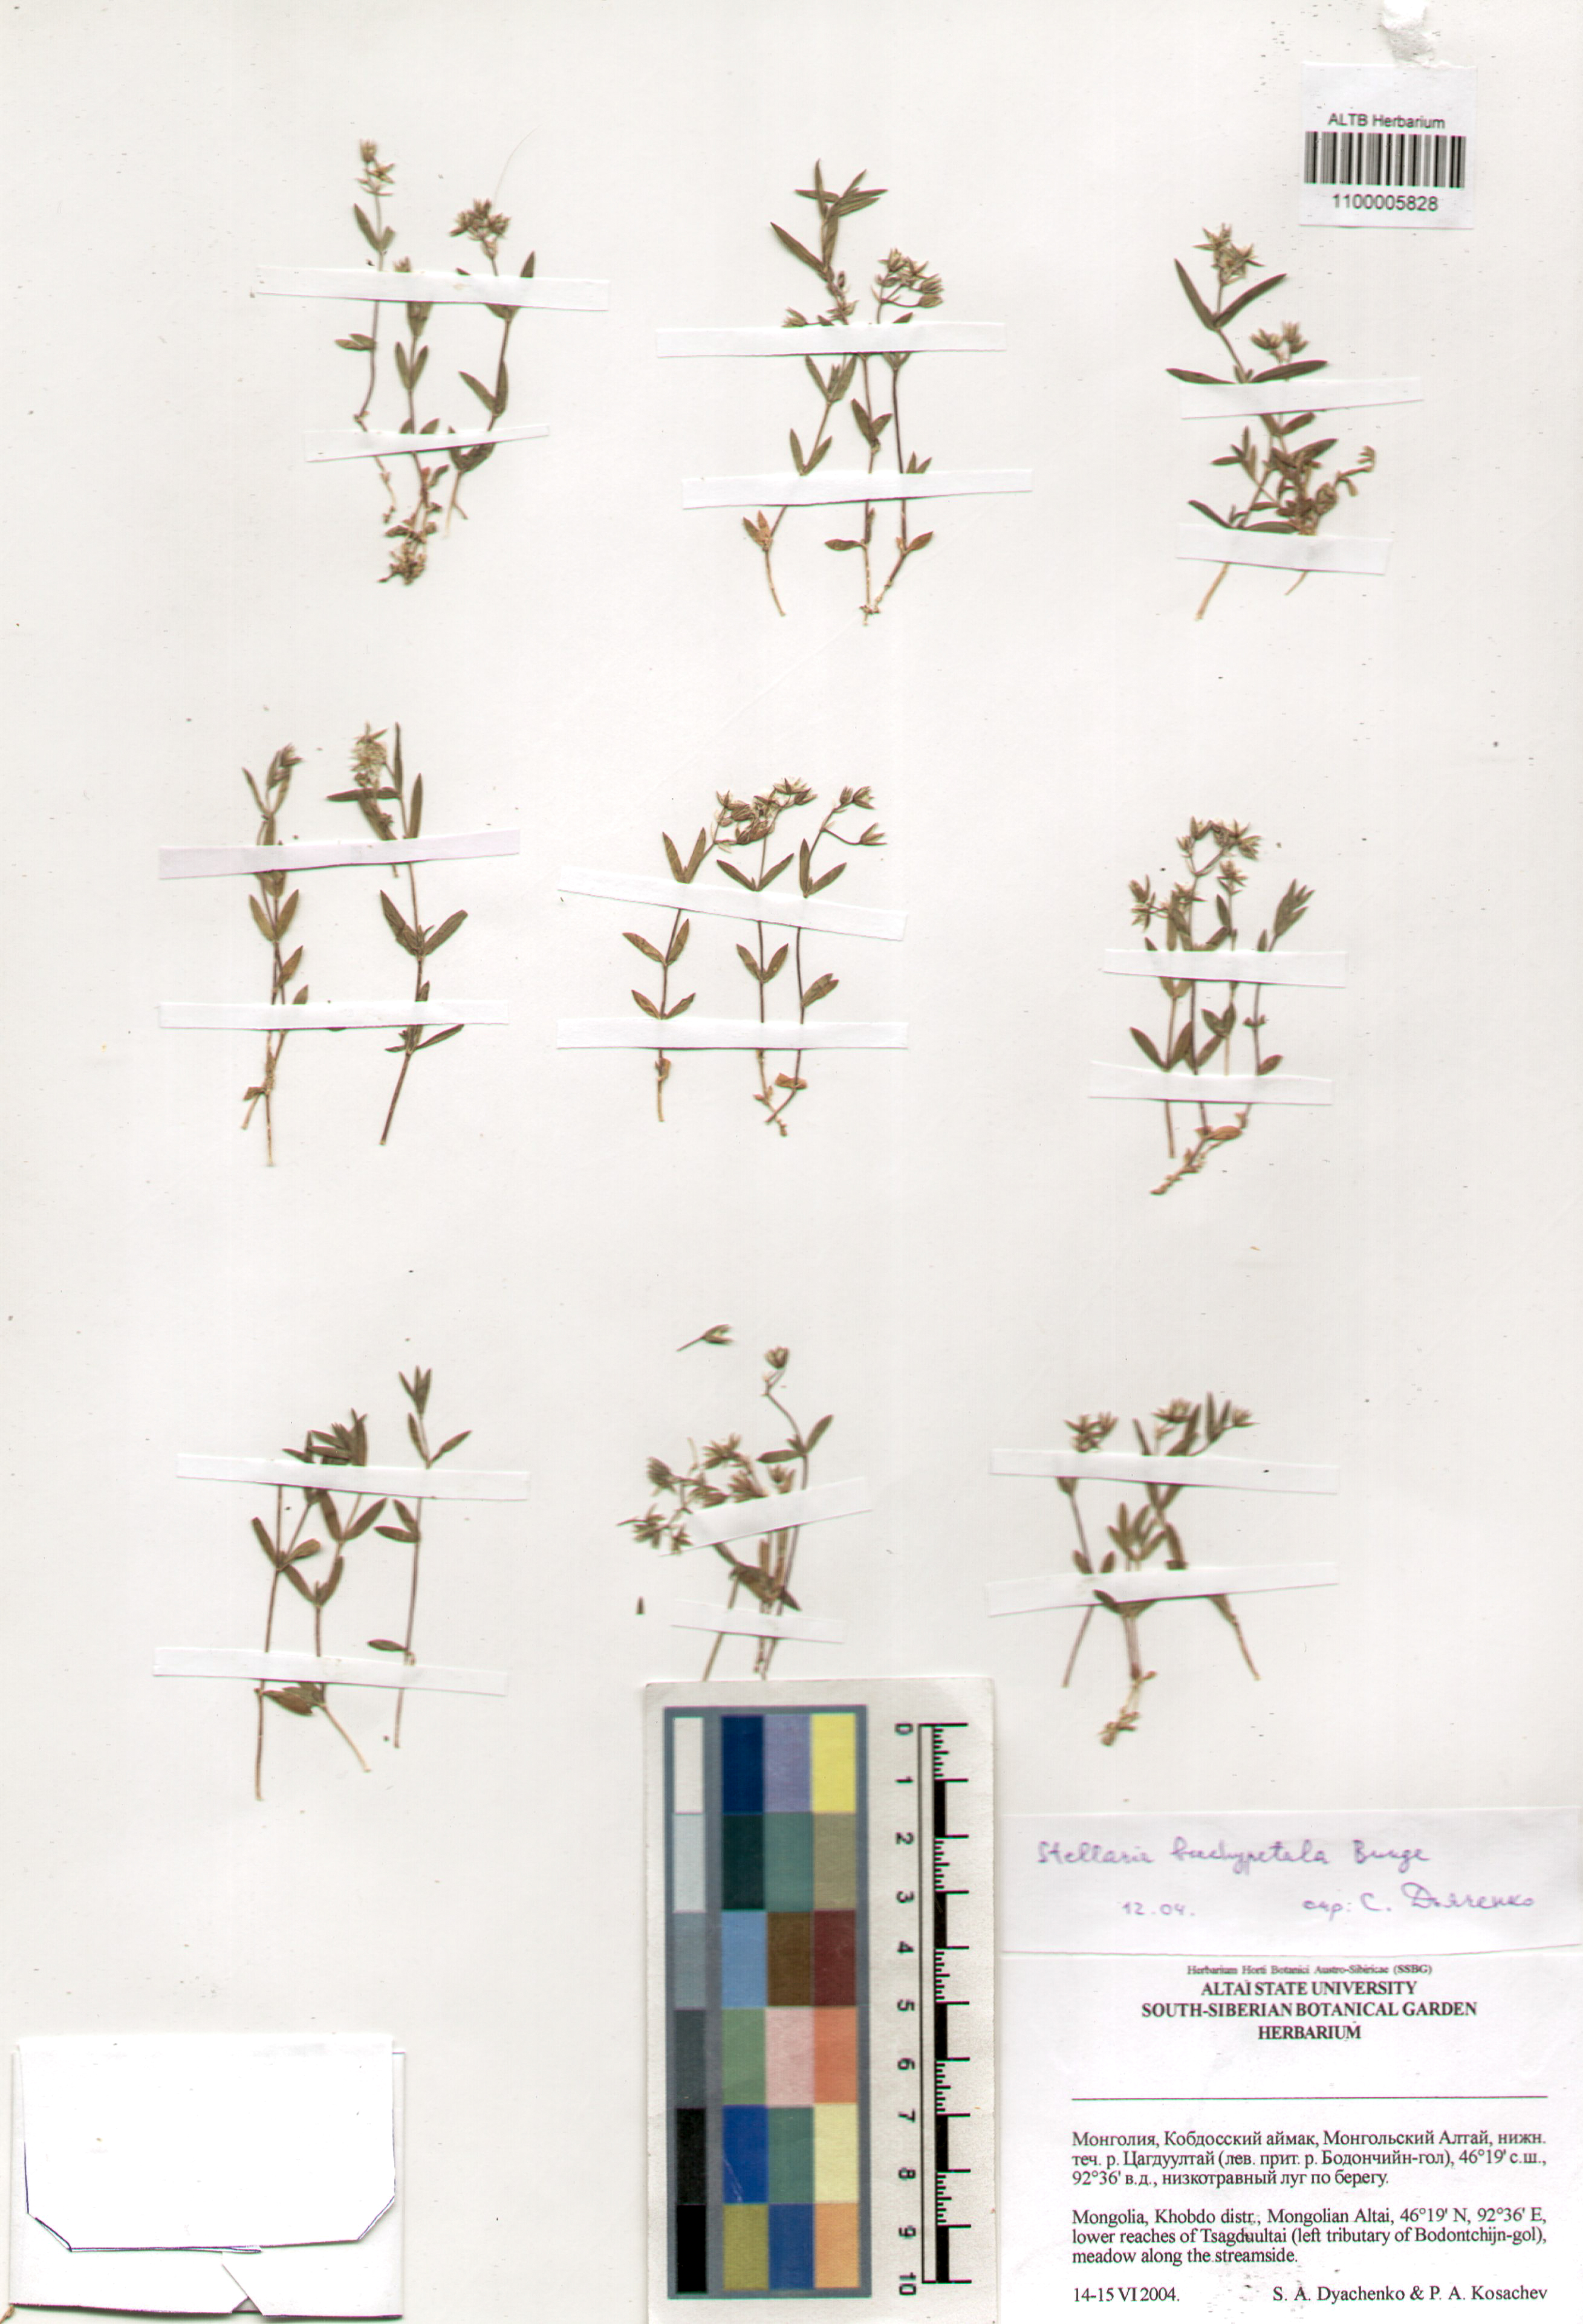 Caryophyllaceae,Stellaria brachypetala Bunge.